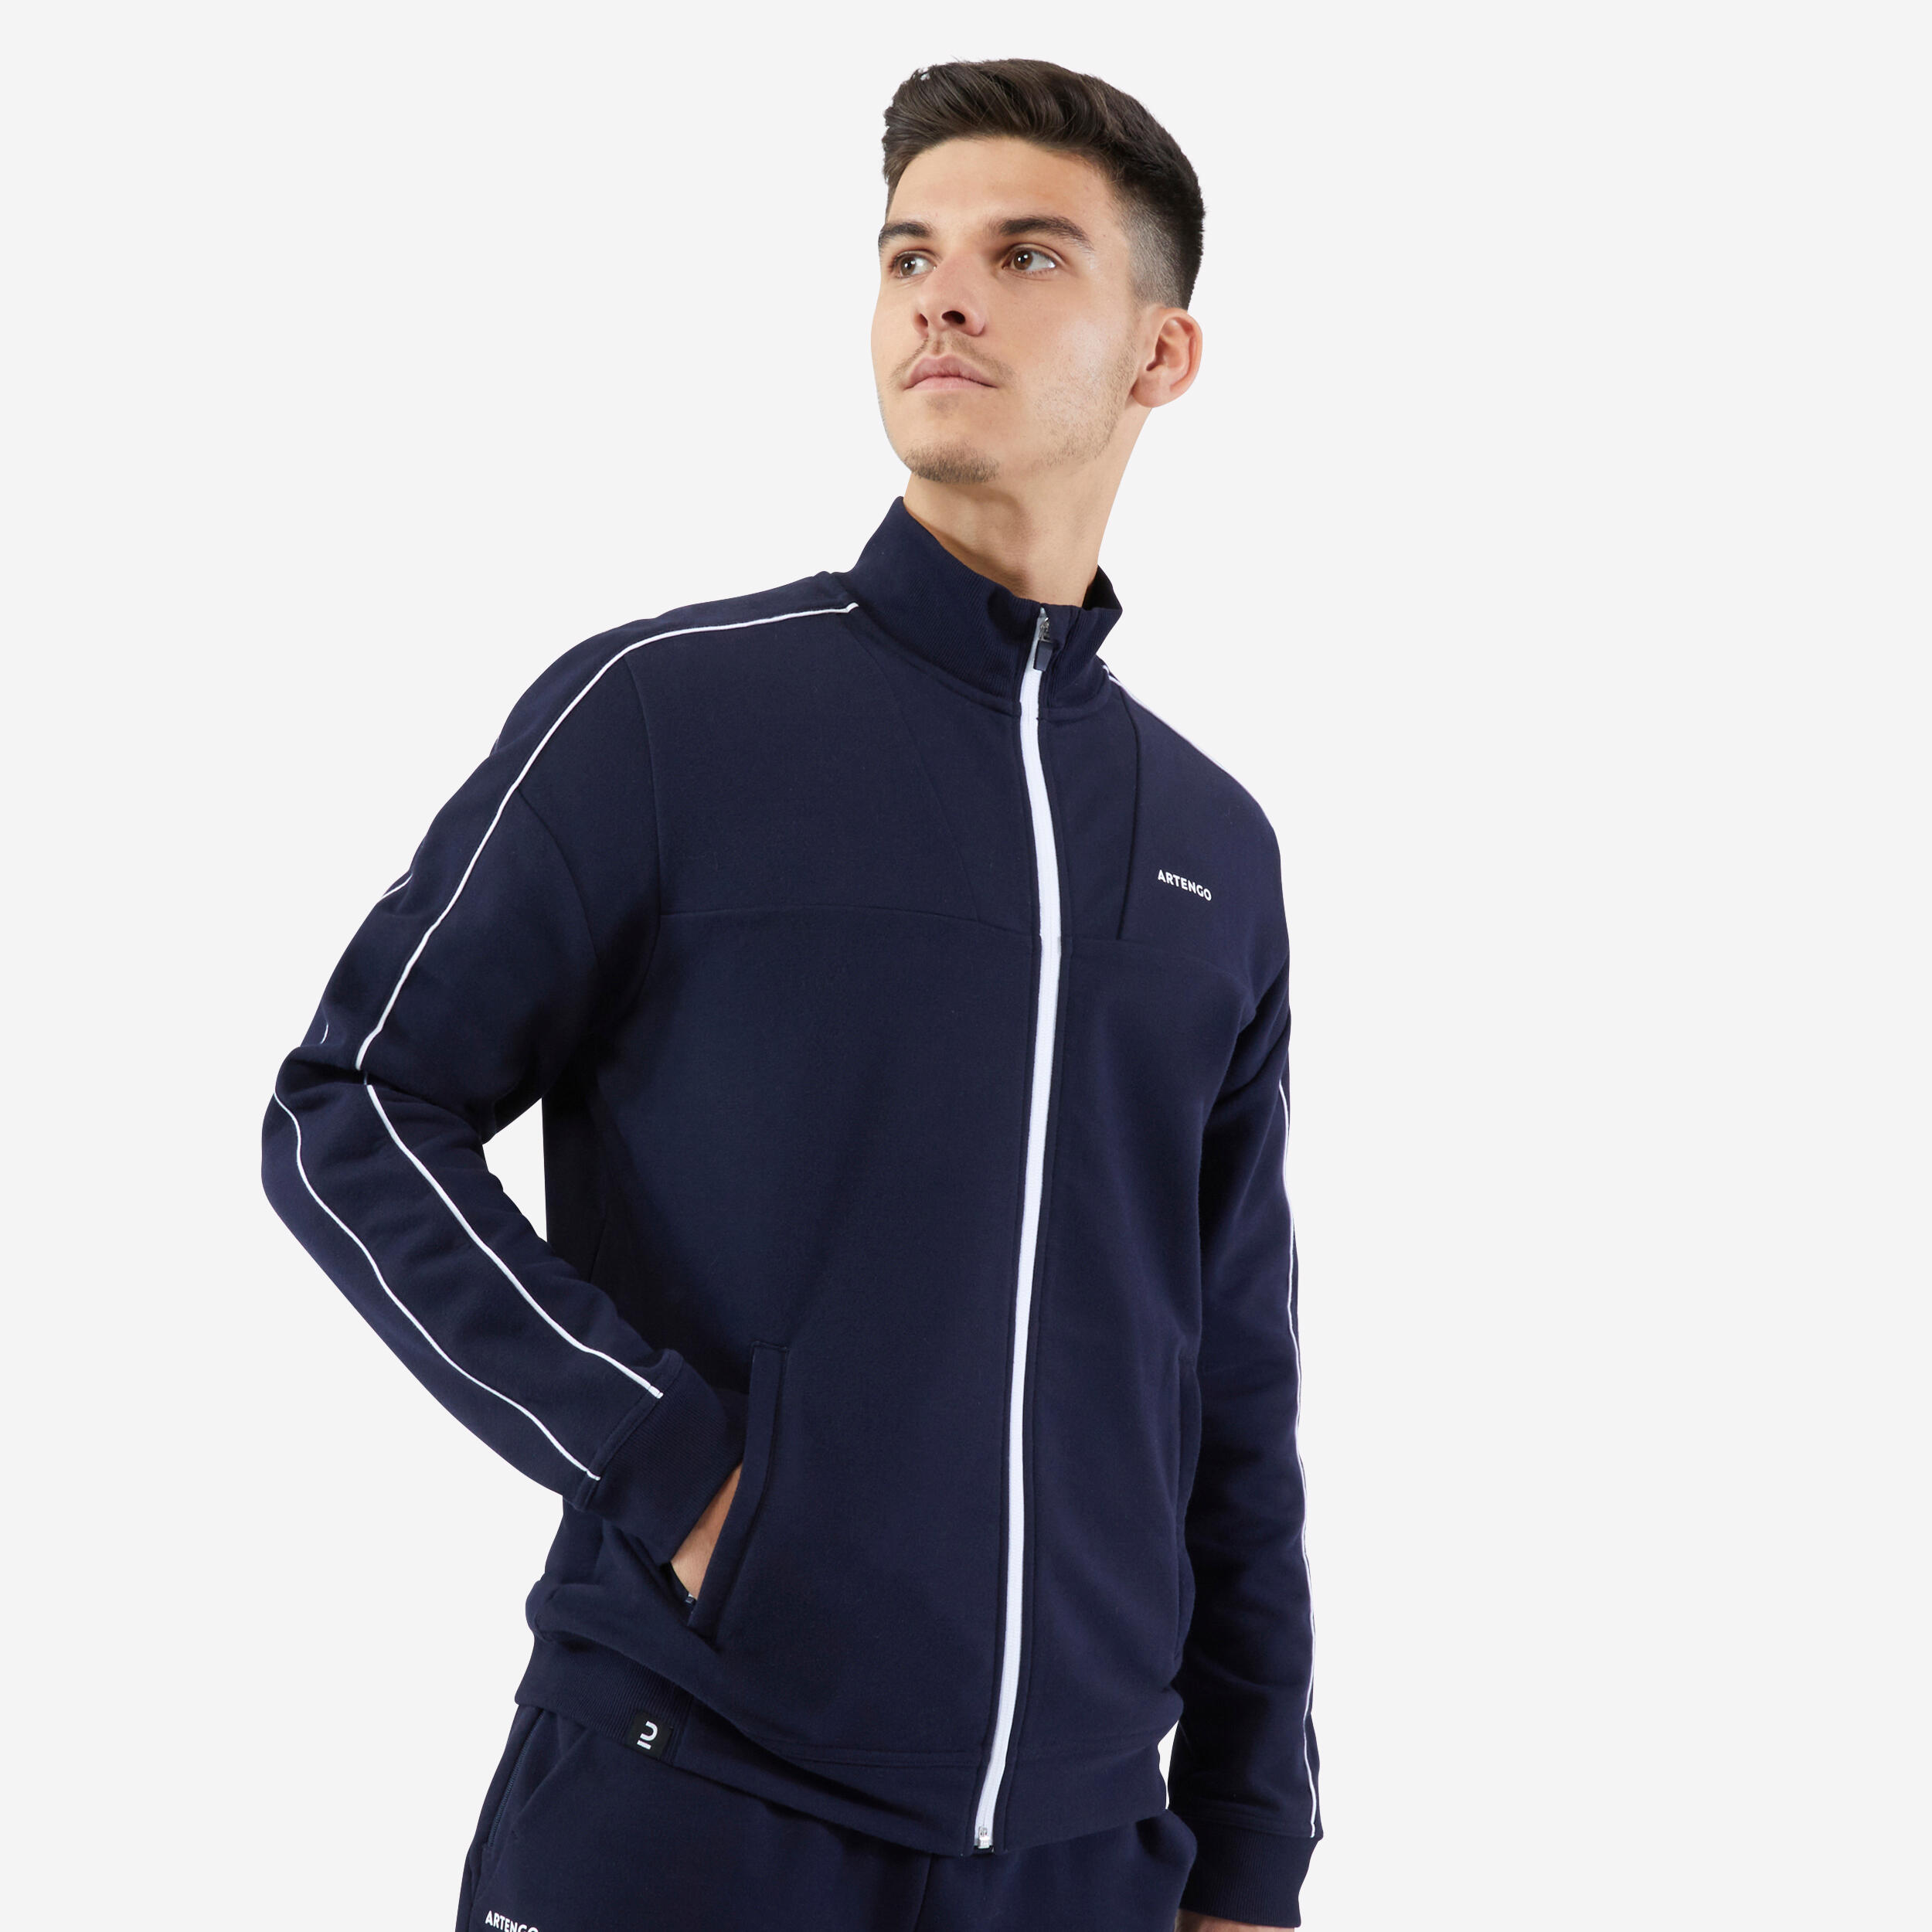 Artengo Men's Tennis Jacket Soft - Navy